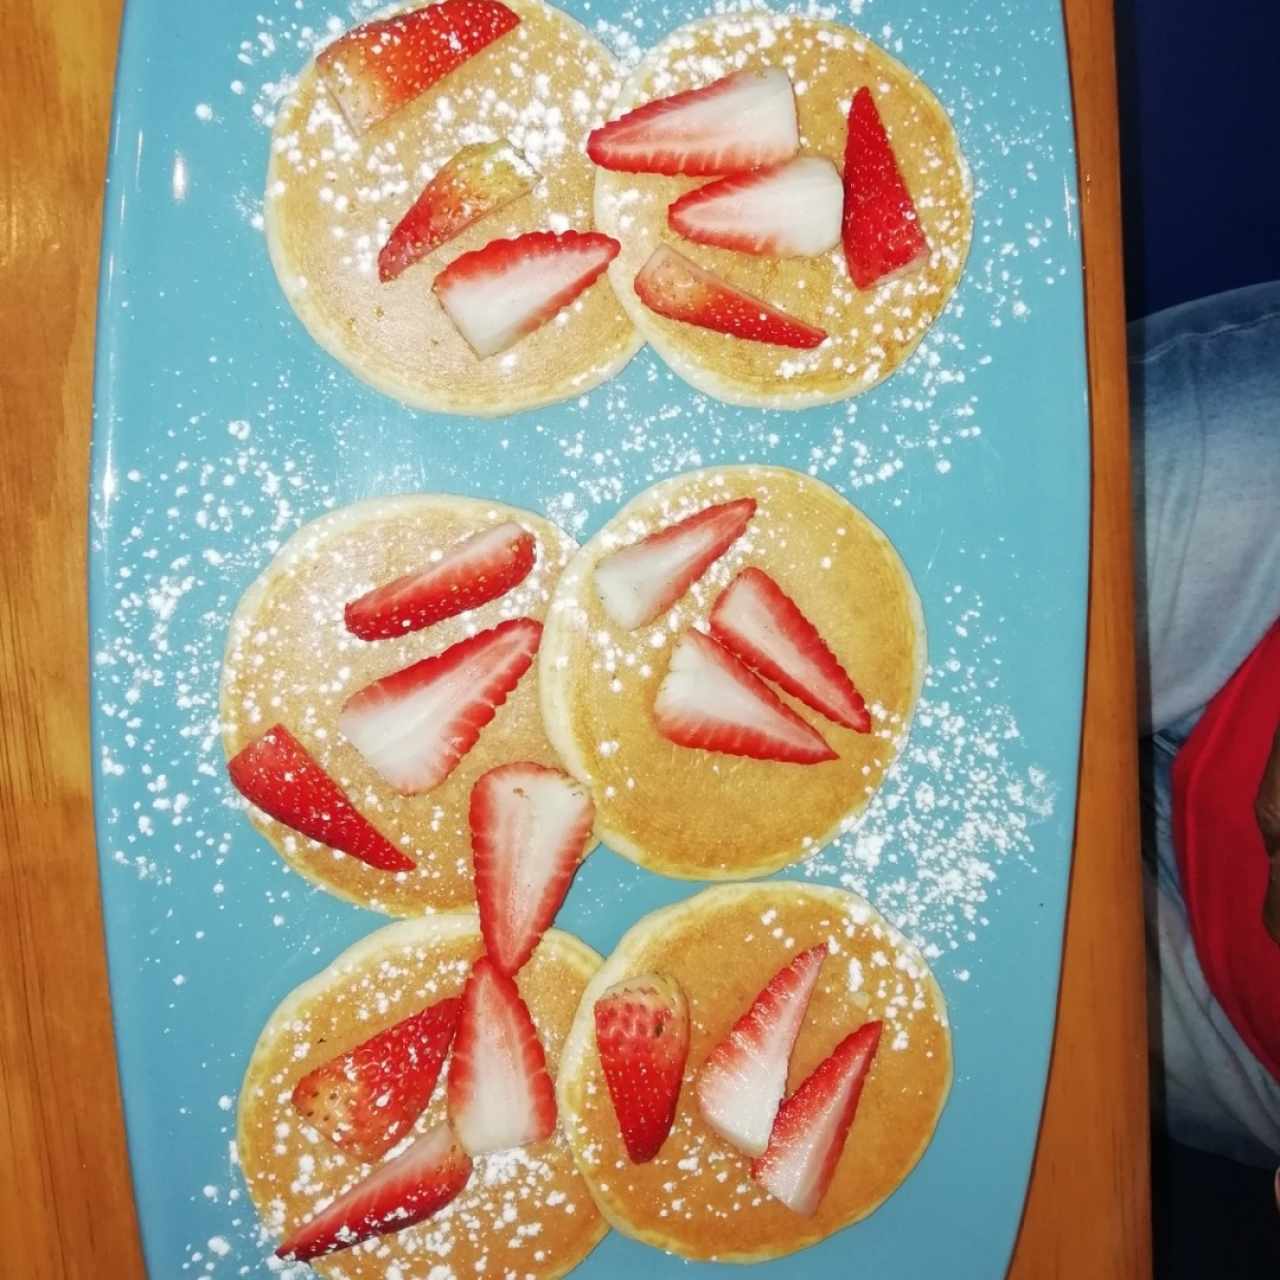 Pancake bites con frutas